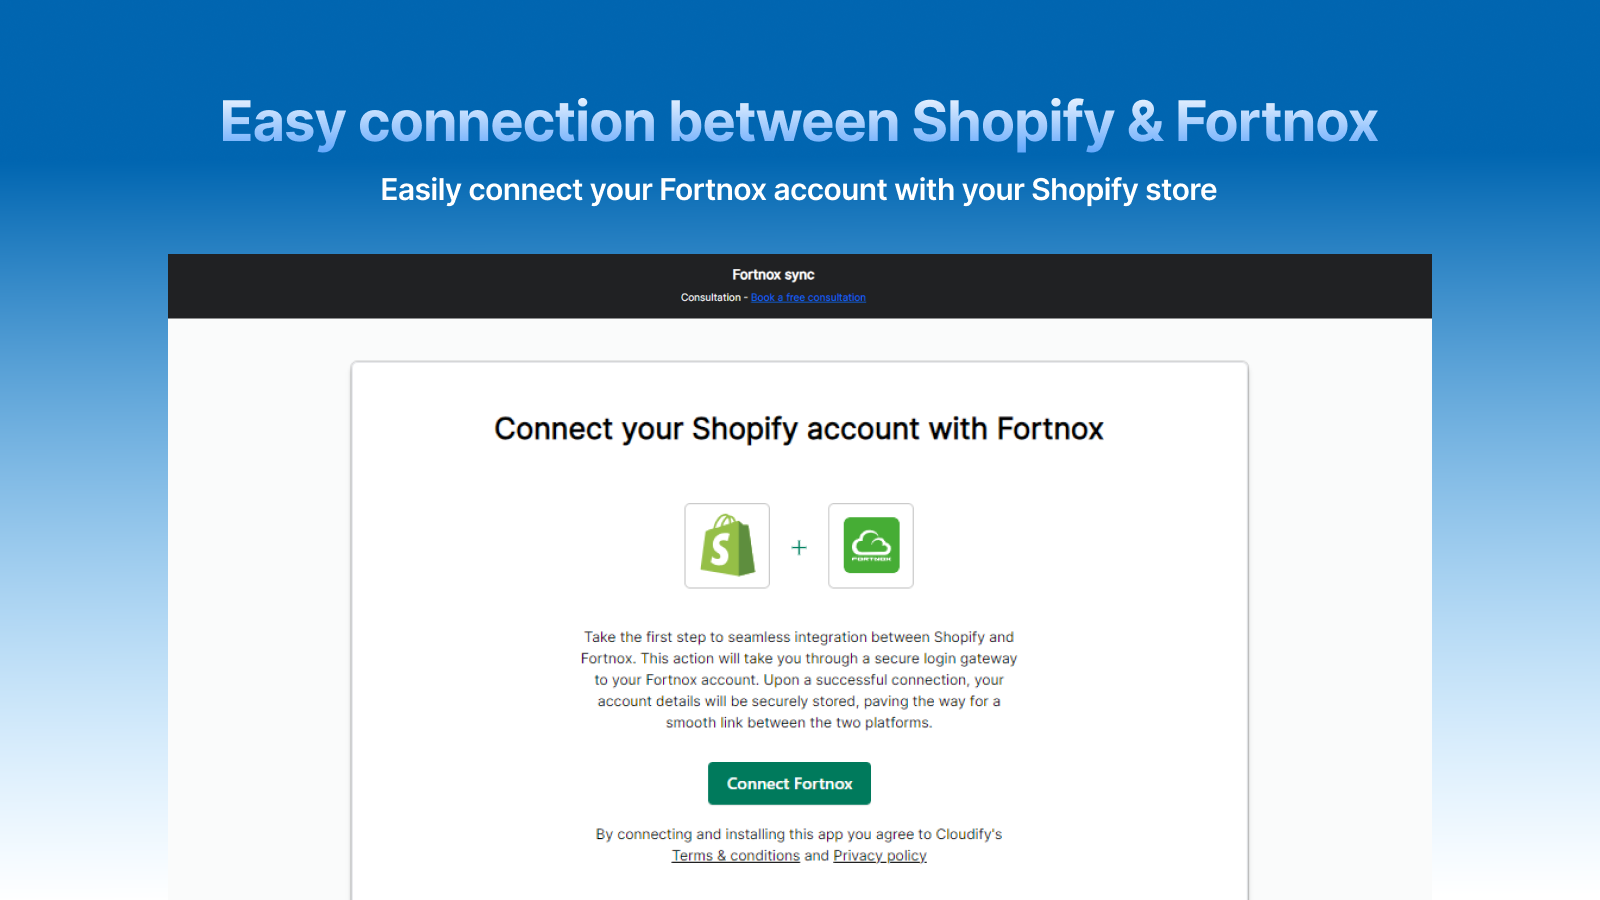 Nemt at forbinde din Fortnox konto med din Shopify butik